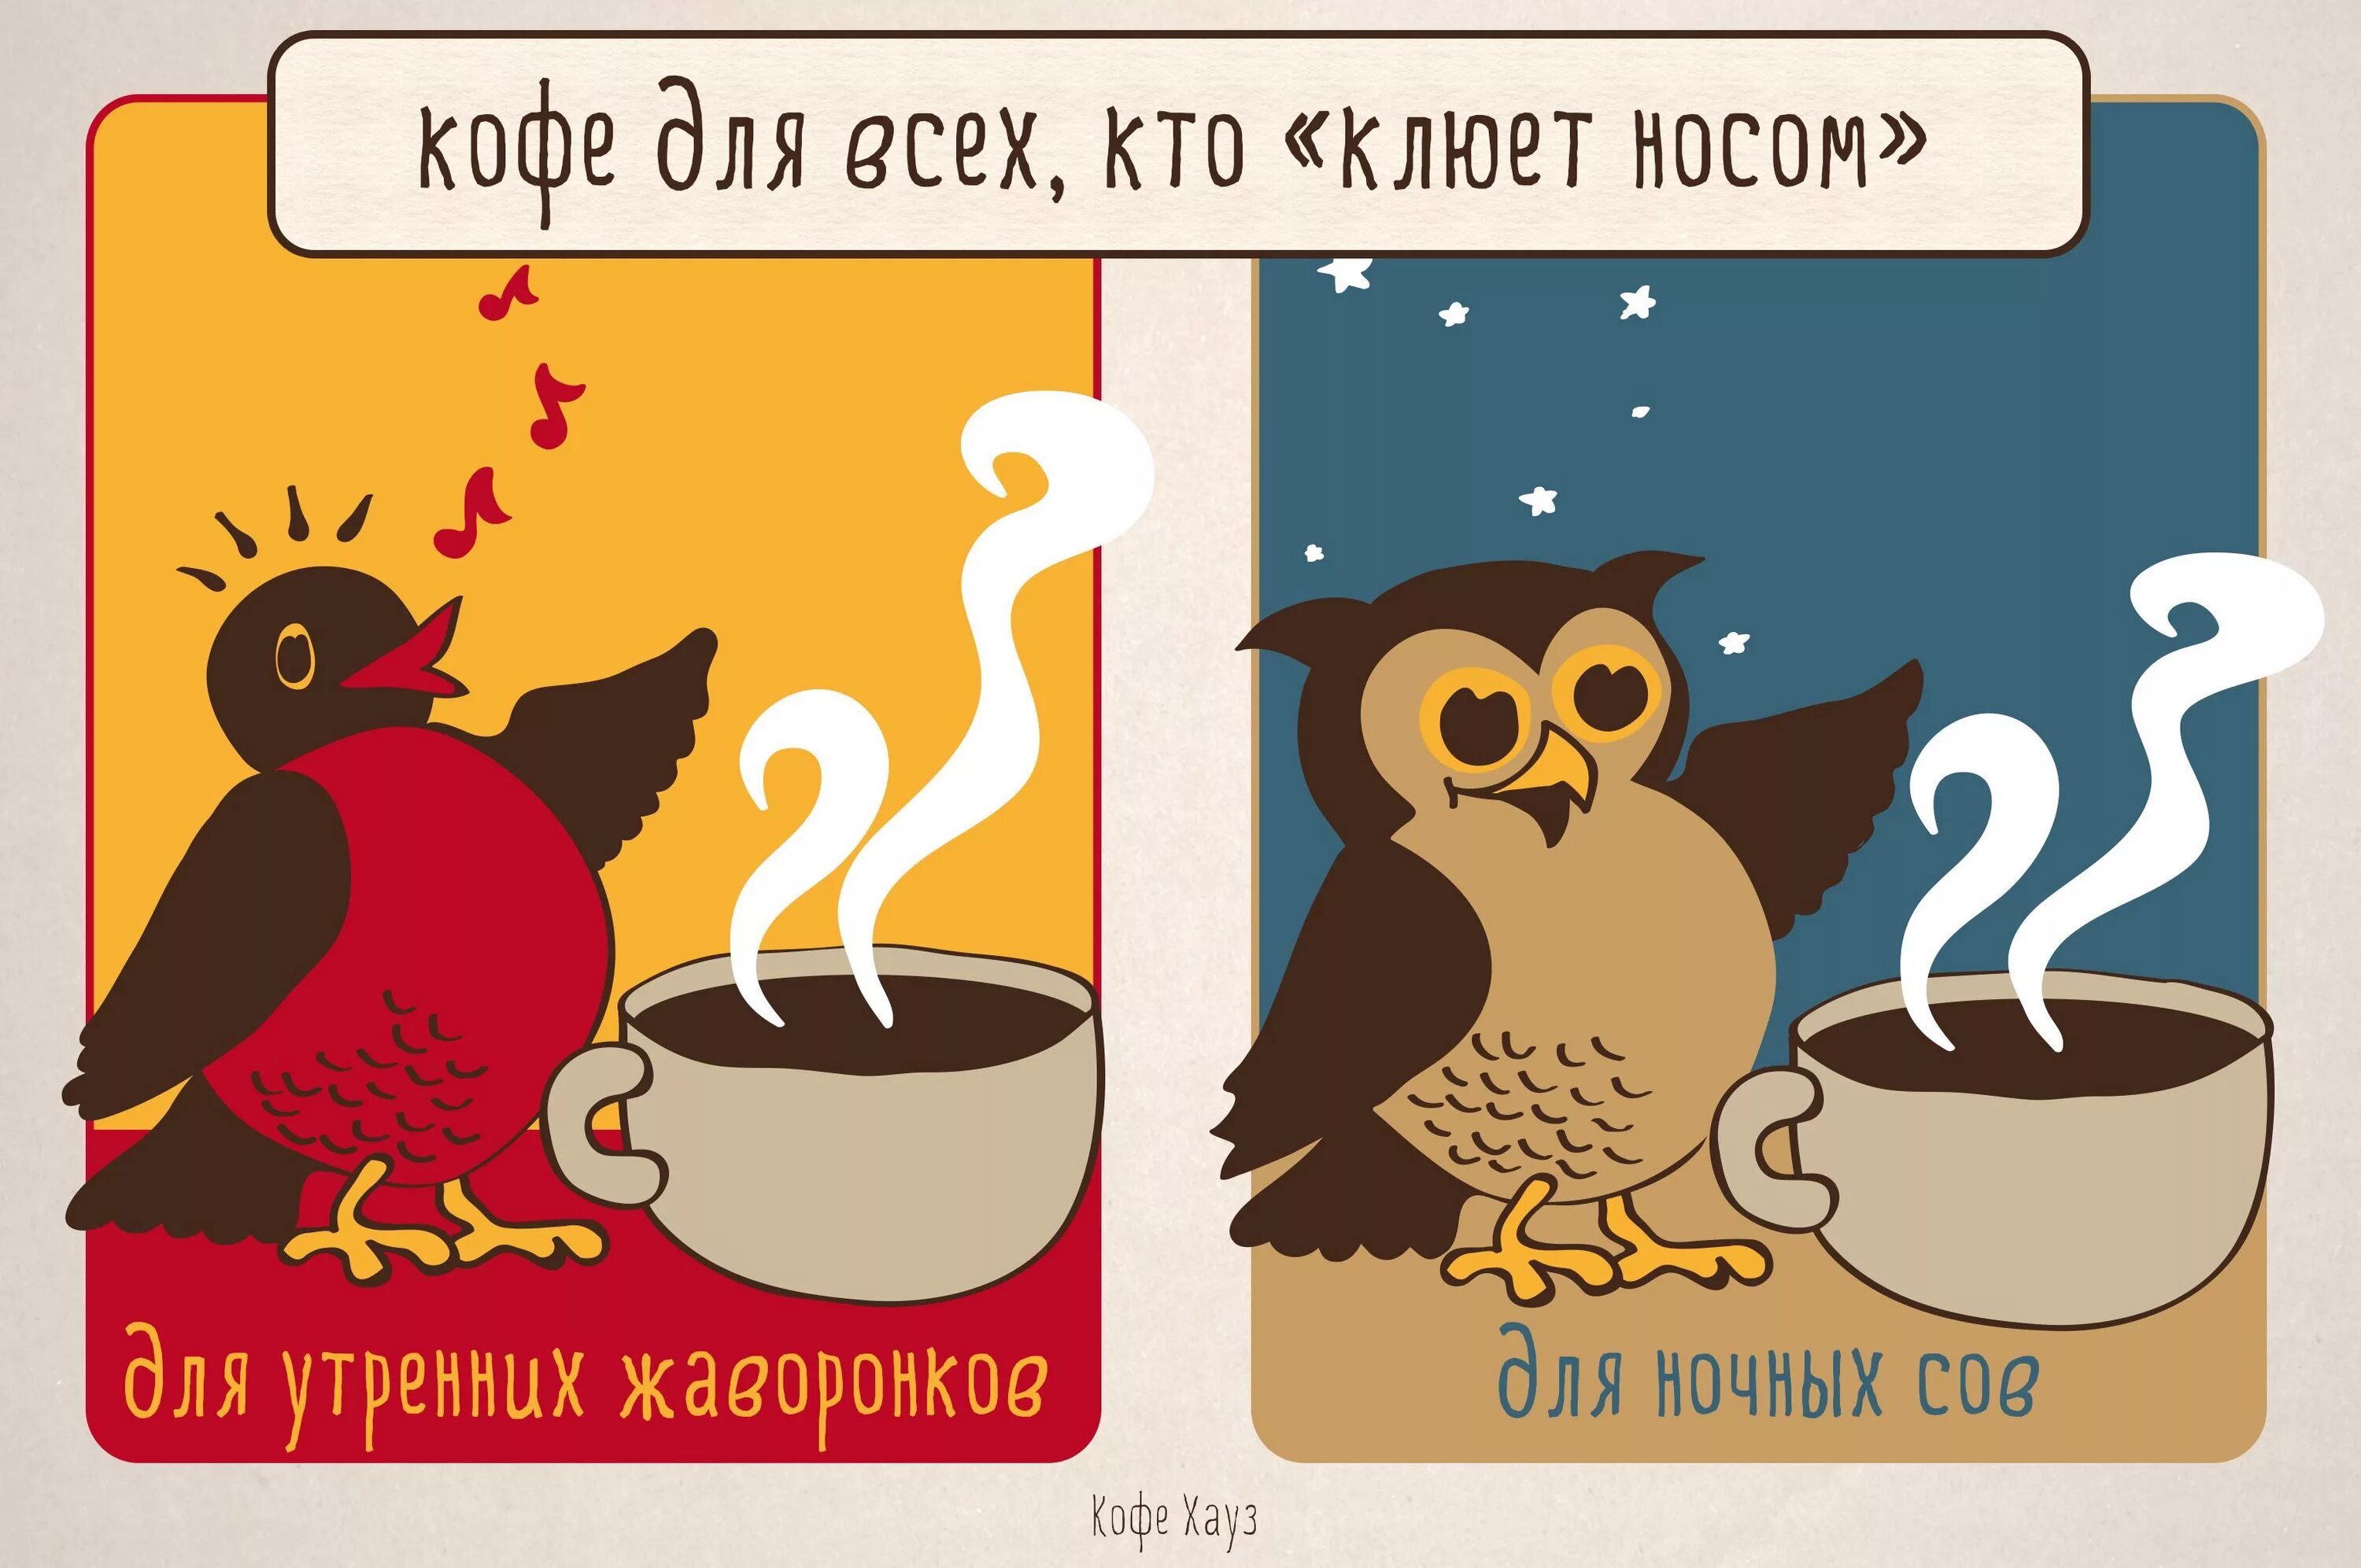 Давай пить кофе. Анекдоты про кофе в картинках. Кофейный юмор иллюстрации. Кофе юмор. Шутки про кофе.